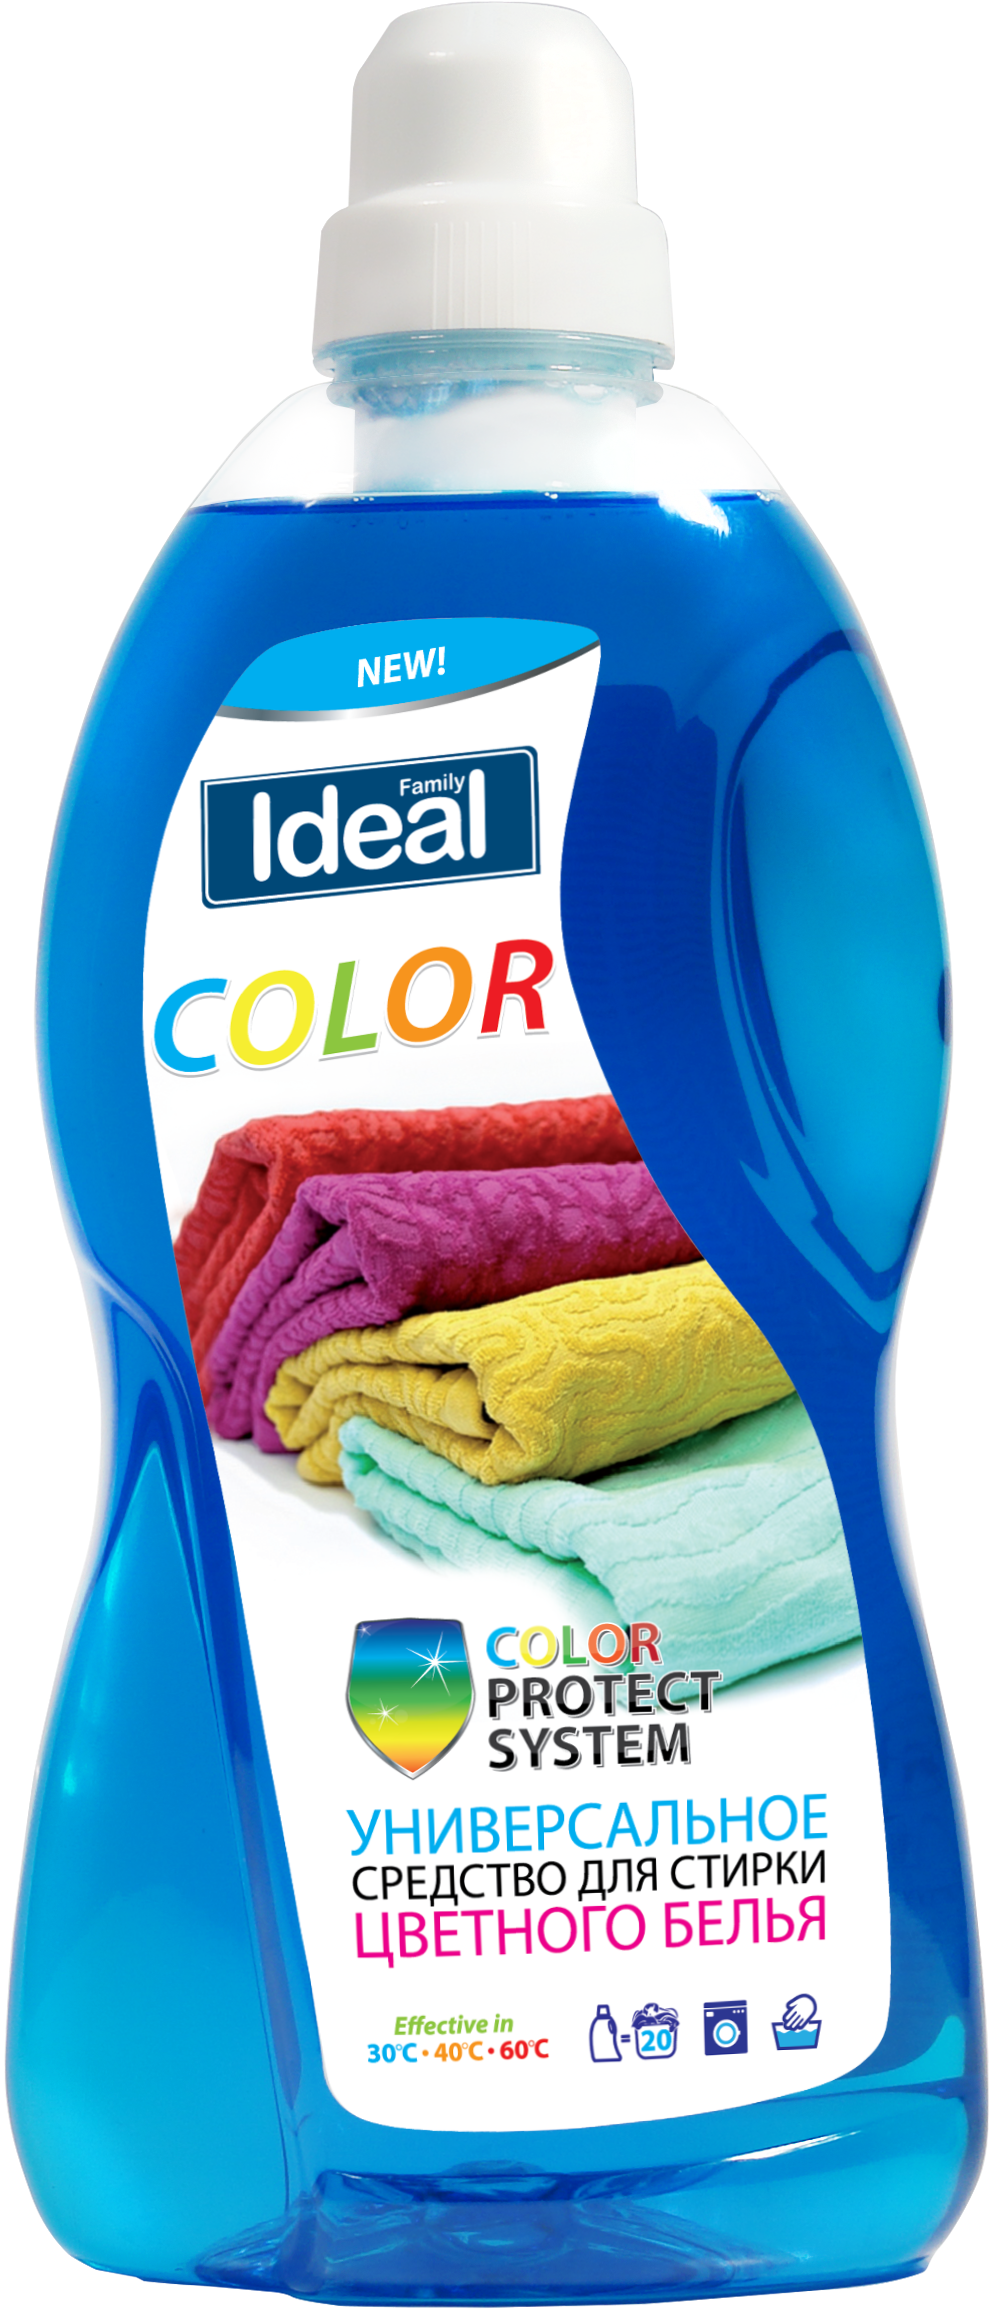 Средство для стирки цветного белья Family Ideal Color универсальное 1 л (10368)